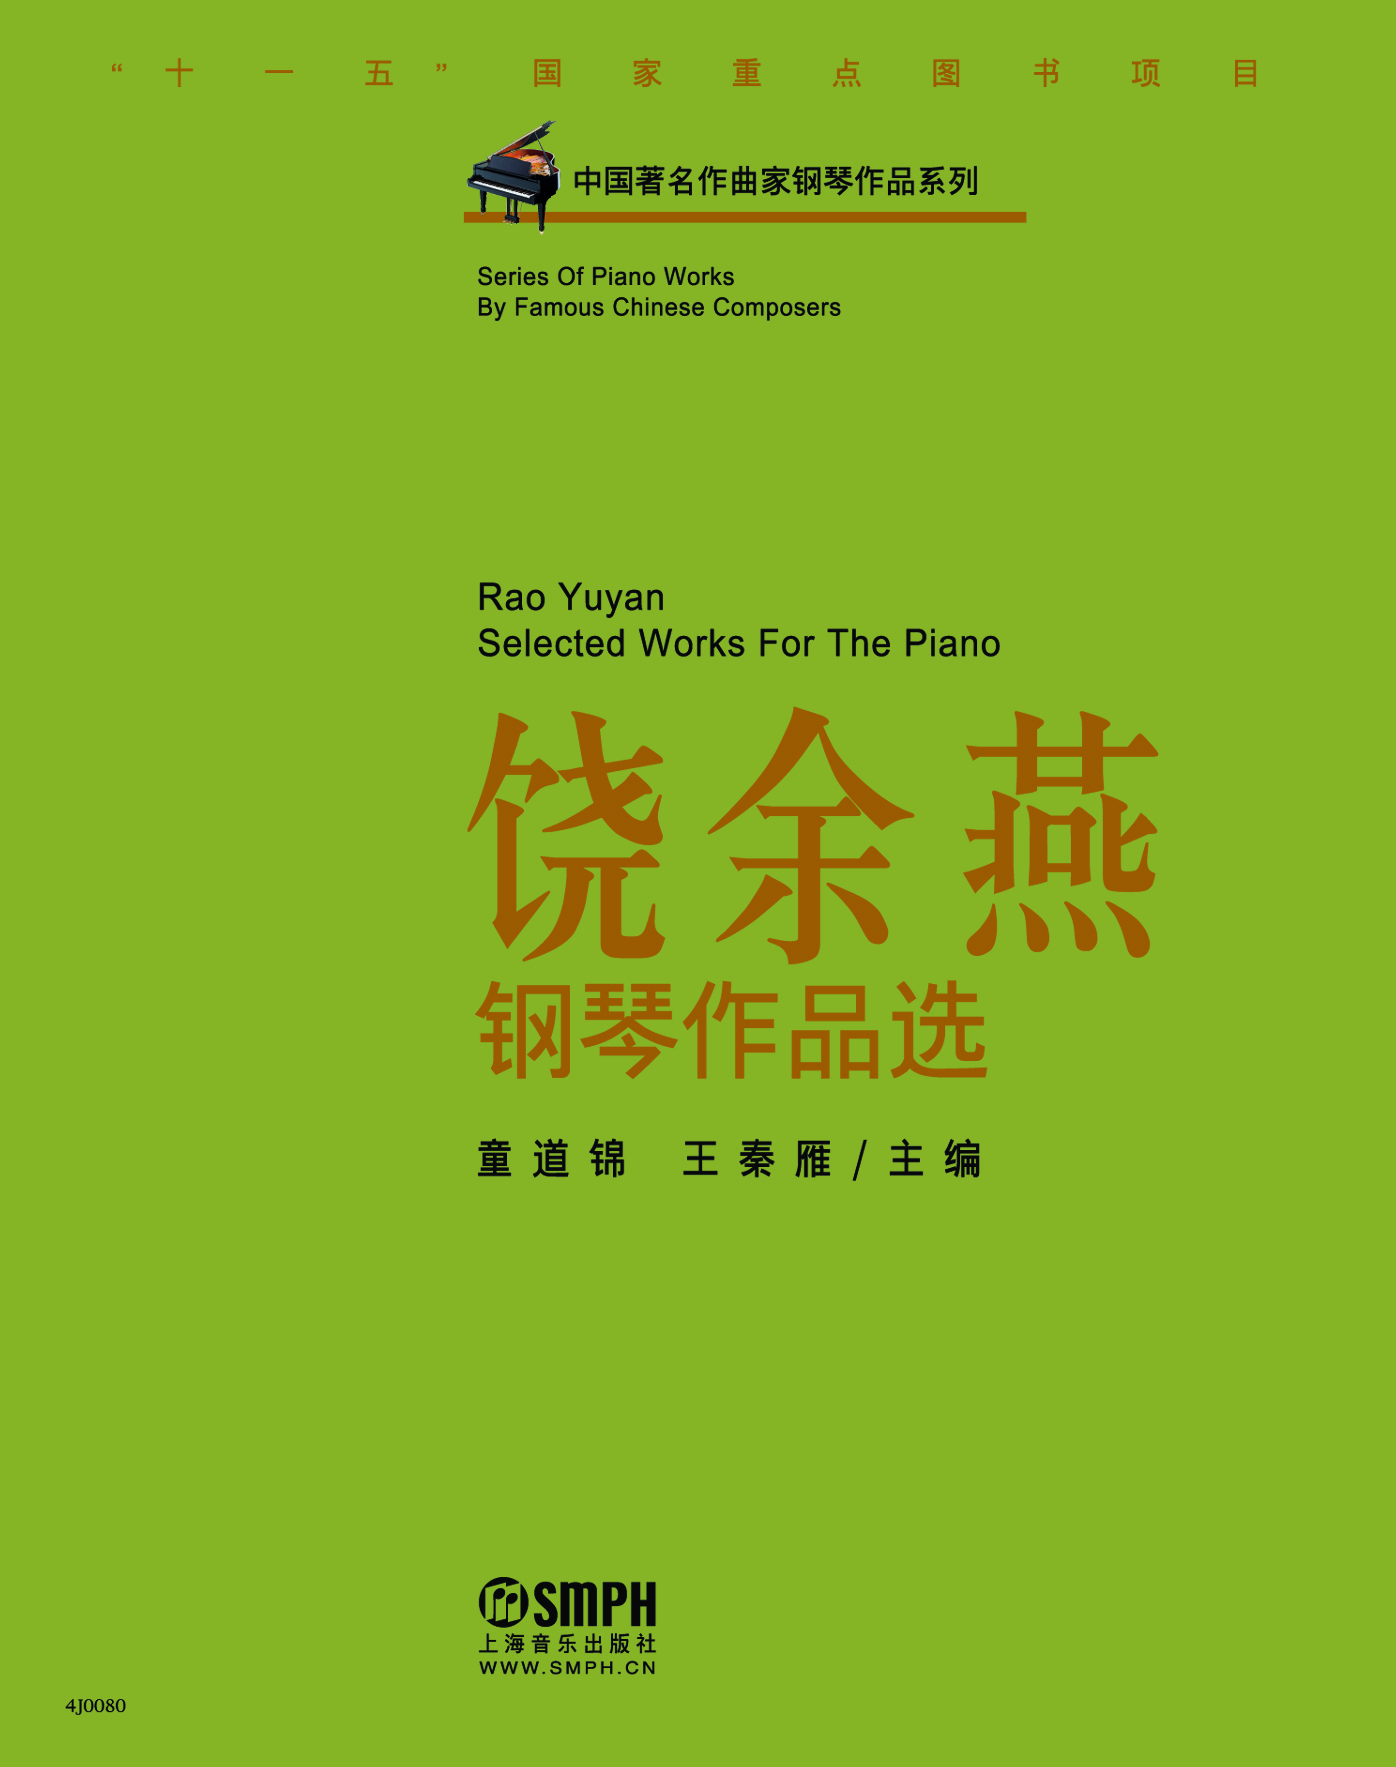 中國著名作曲家鋼琴作品系列-饒余燕